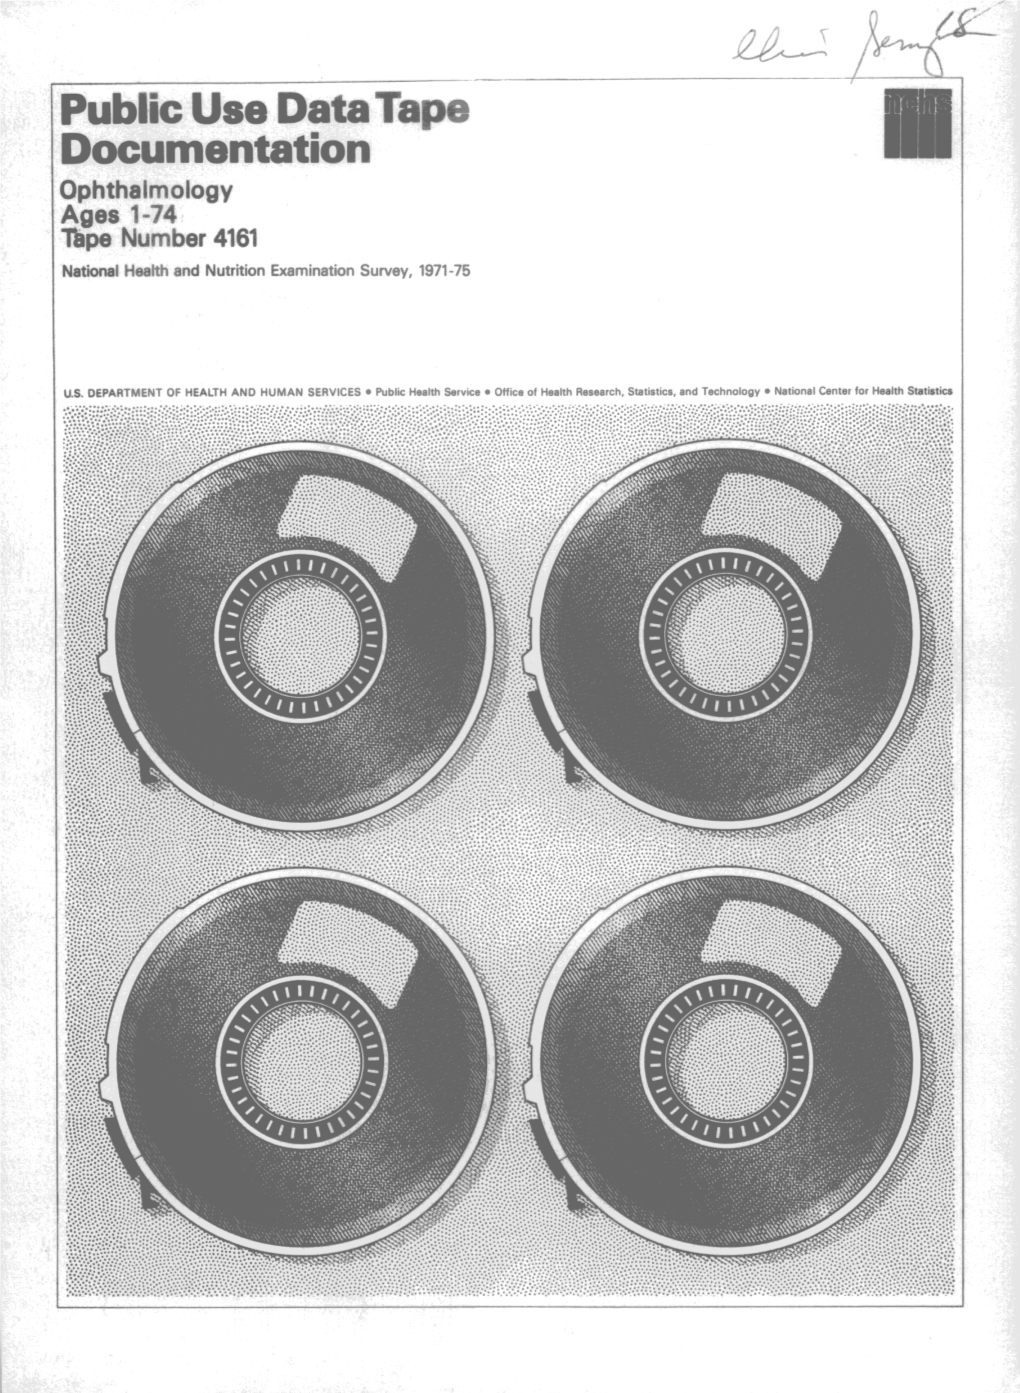 Public Use Datatape Documentation (5/81)